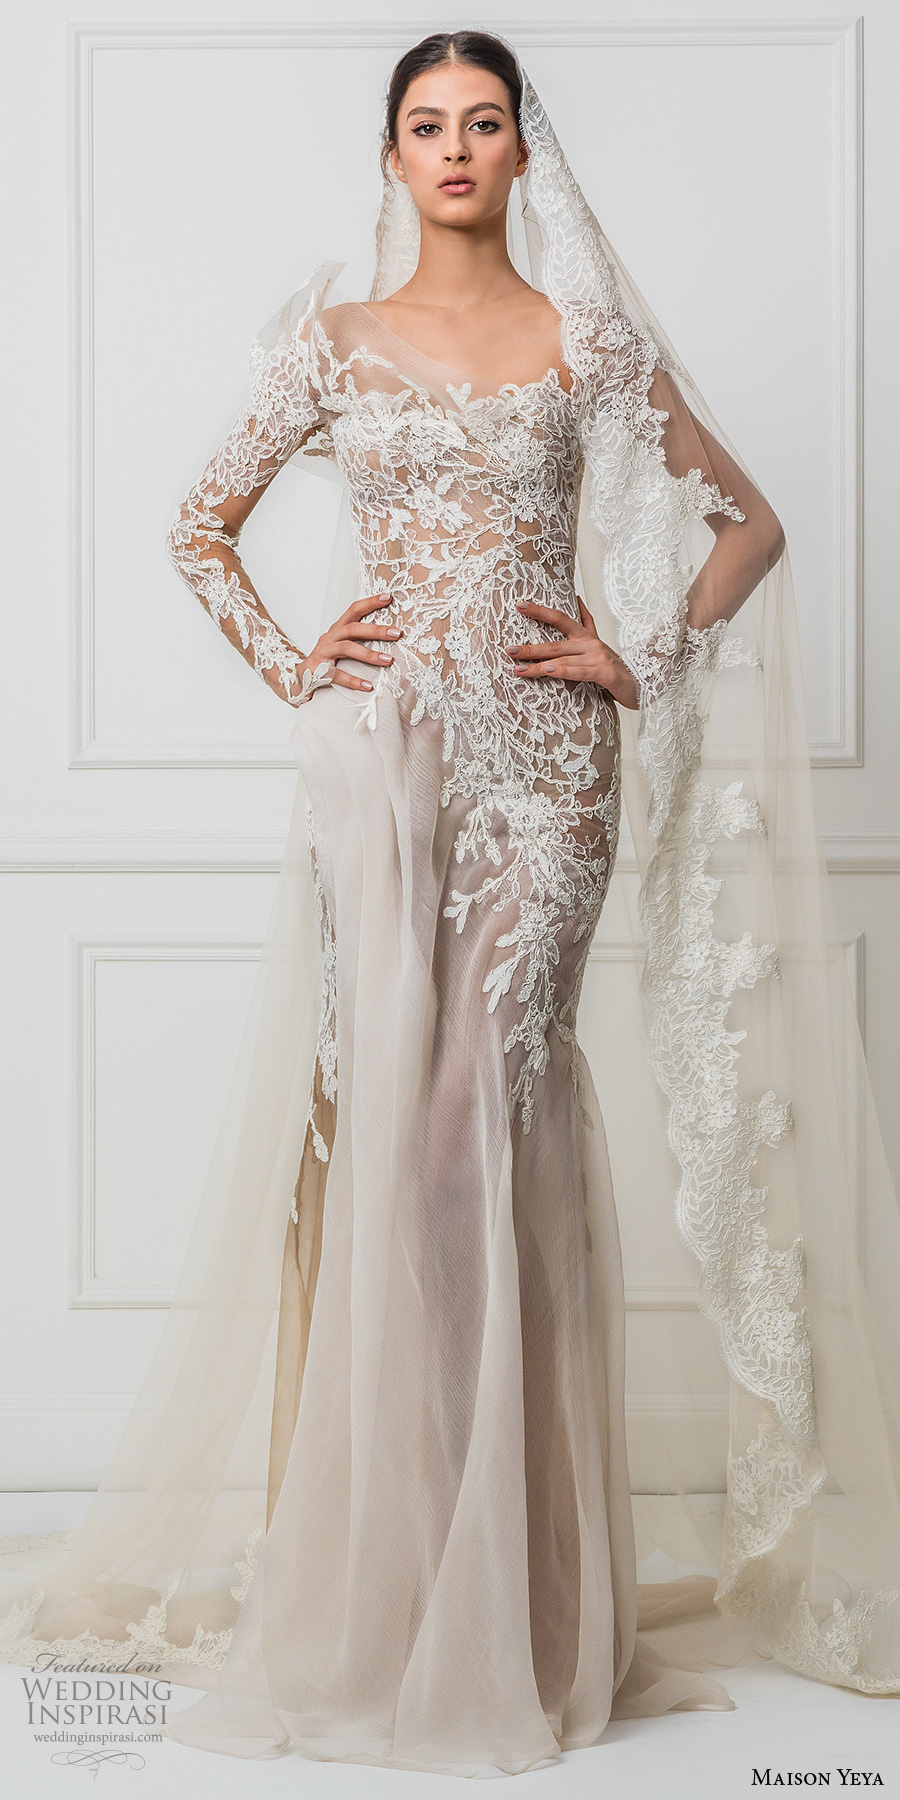 maison yeya 2017 bridal one side long sleeves heavily embroidered bodice elegant glamorous lace sheath wedding dress illusion lace back sweep train (3) mv